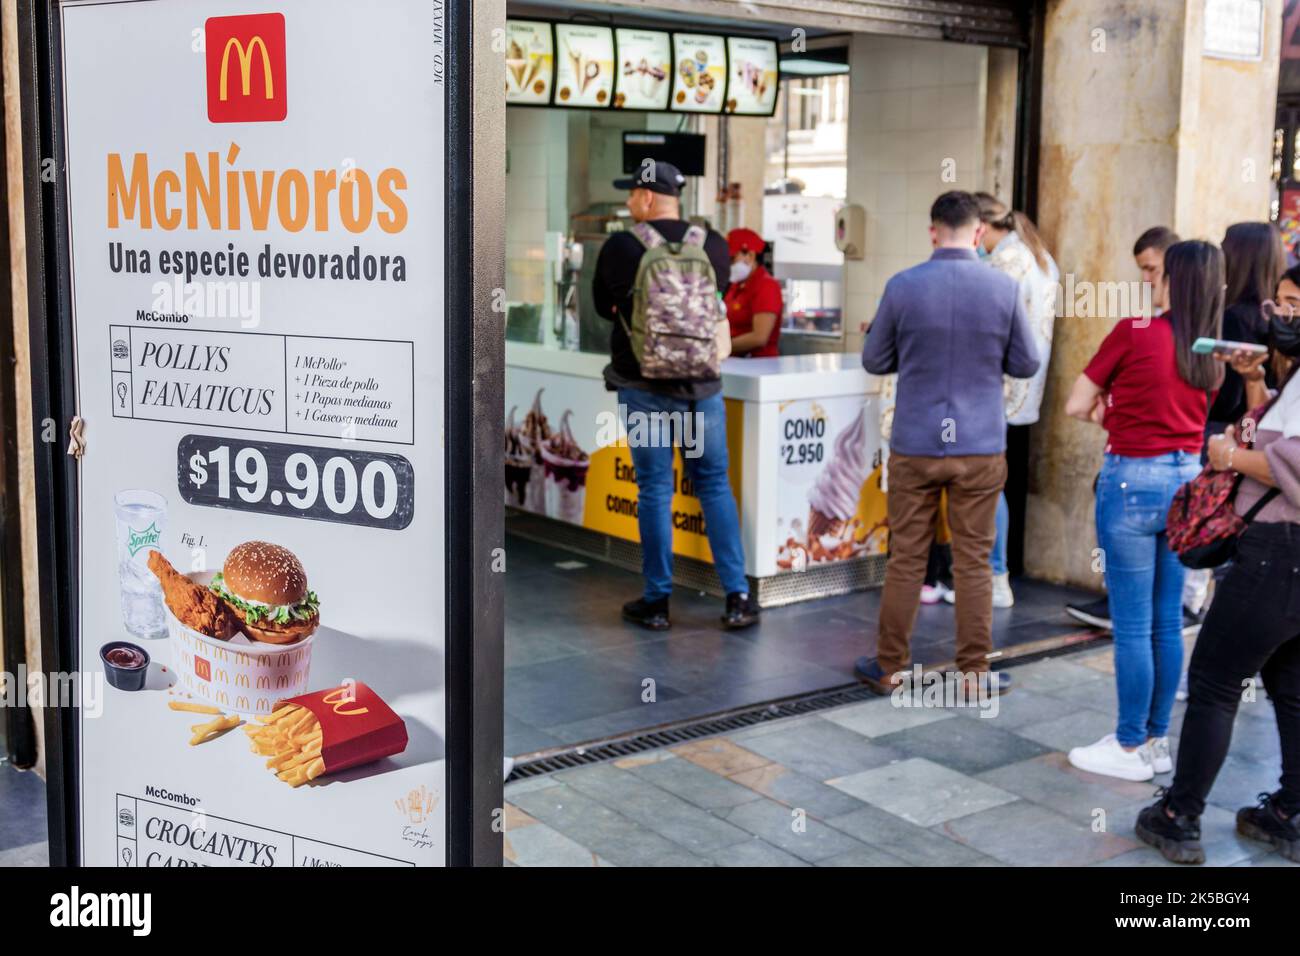 Bogota Colombia,Sante Fe Carrera 7 Avenida Jimenez McDonald's McNivoros giocare a parole wordplay spagnolo pesos prezzo di valuta, fast food restaur Foto Stock